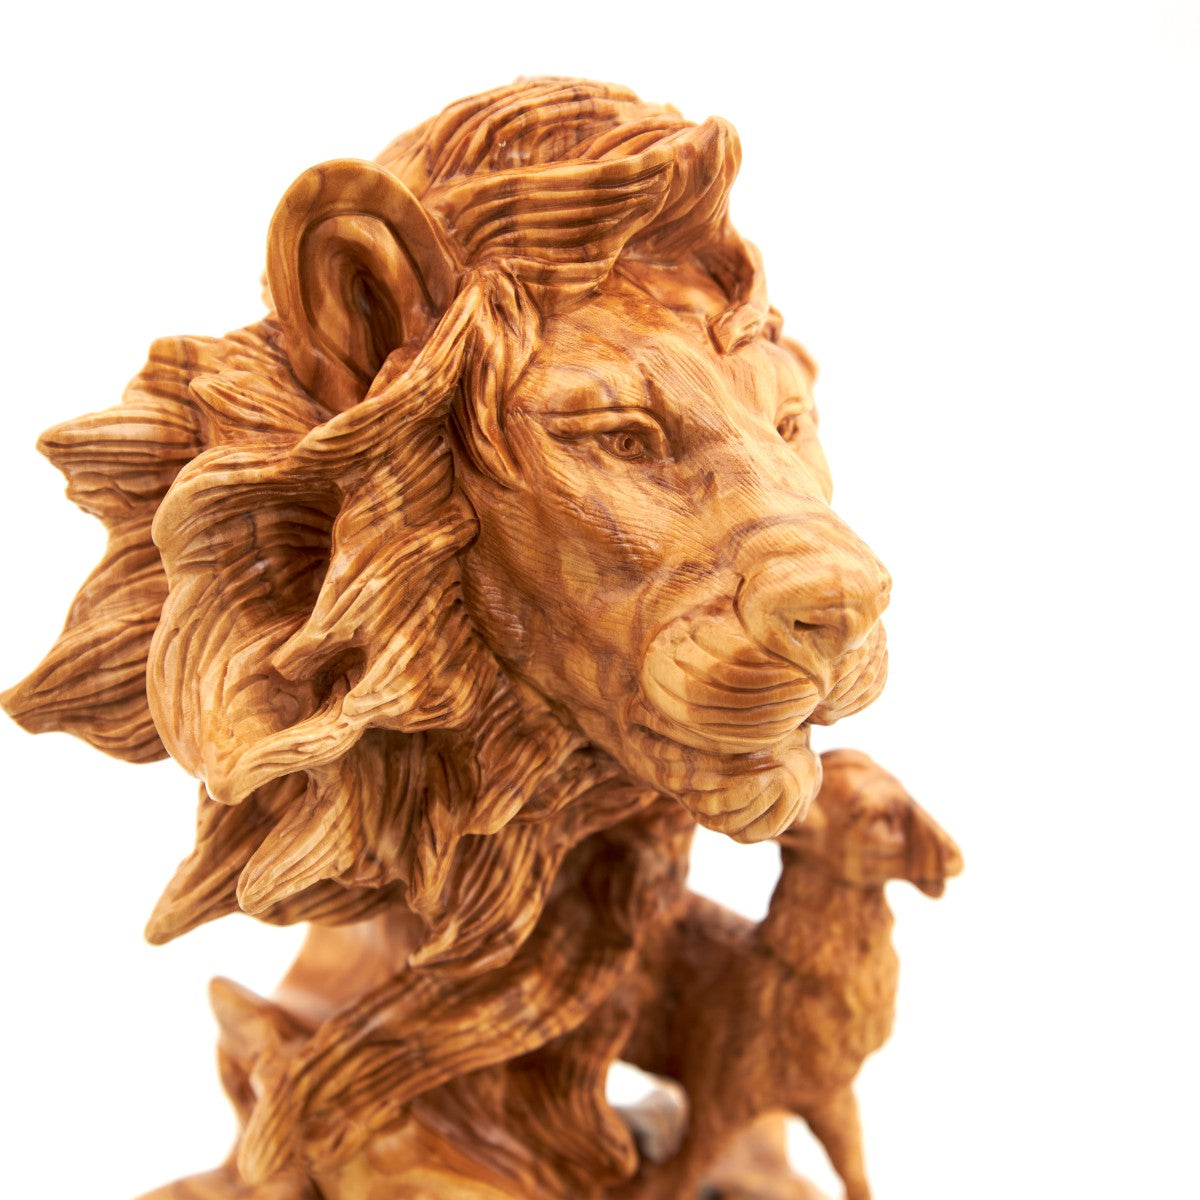 Unique "Lion with Lamb" Sculpture, Olive Wood 12.6"